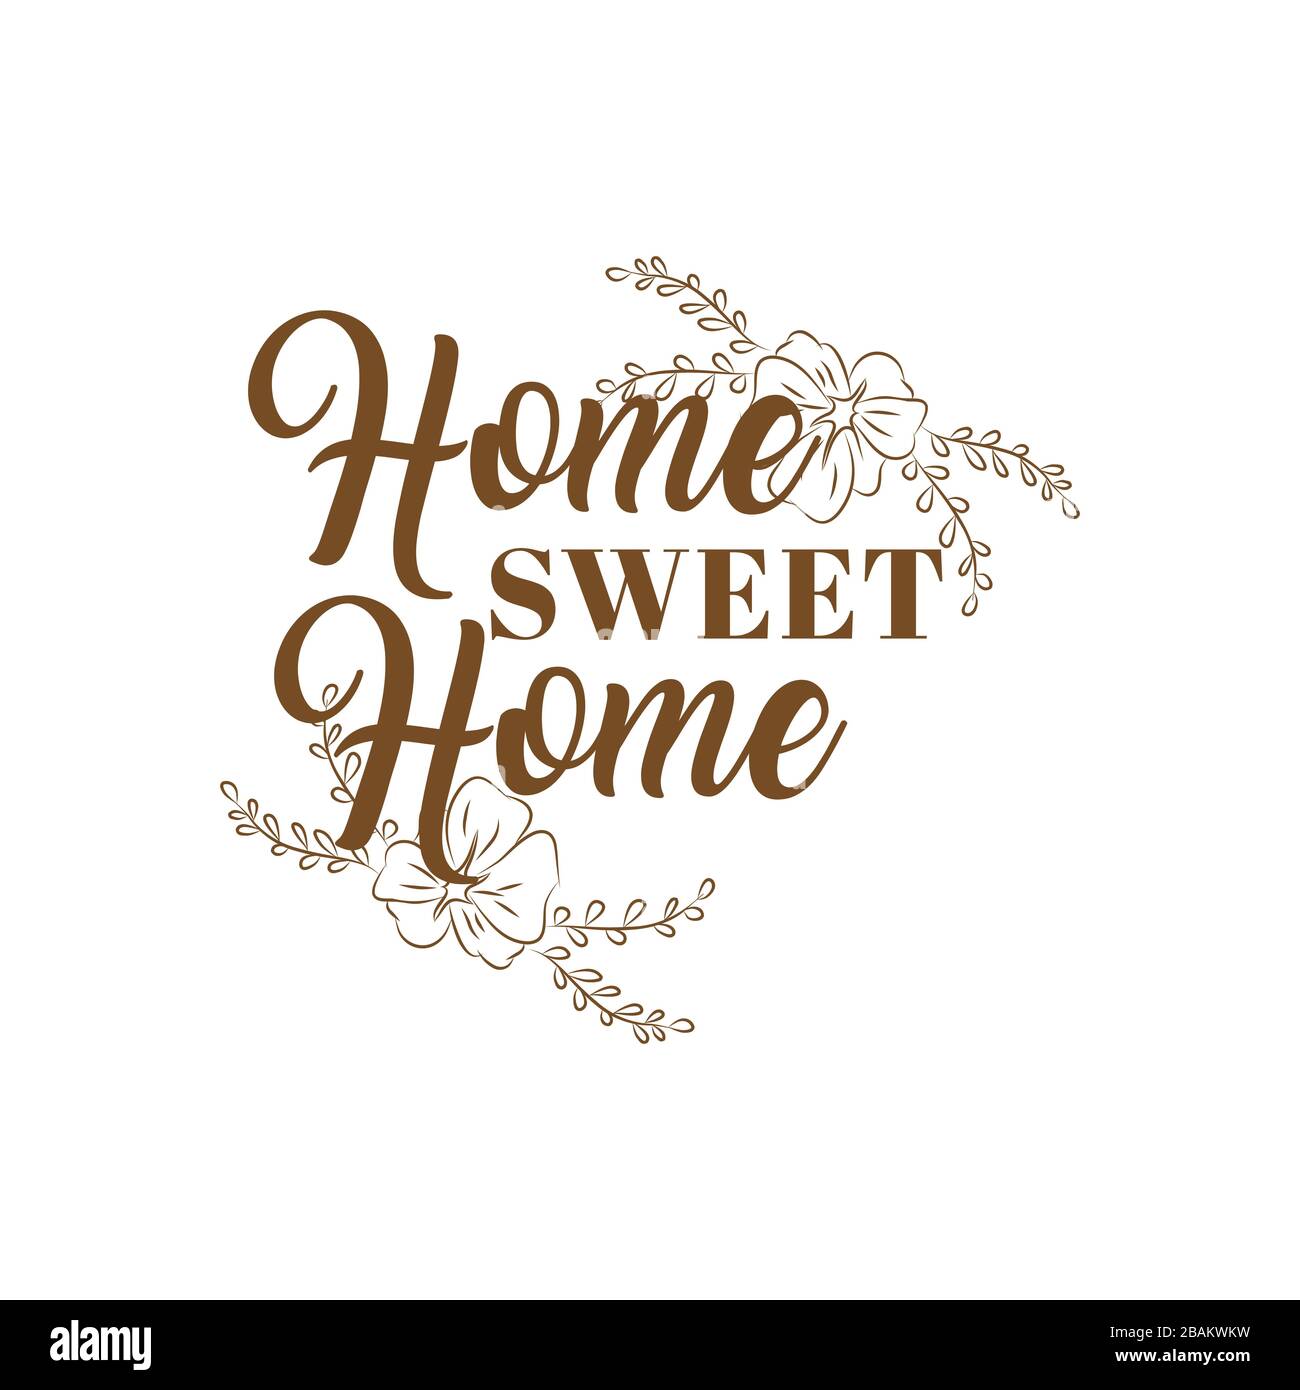 Lettrage manuel typographie poster.Calligraphique citation 'Home Sweet home'.pour les affiches housewarming, cartes de vœux, décorations de maison.illustration vectorielle. Illustration de Vecteur